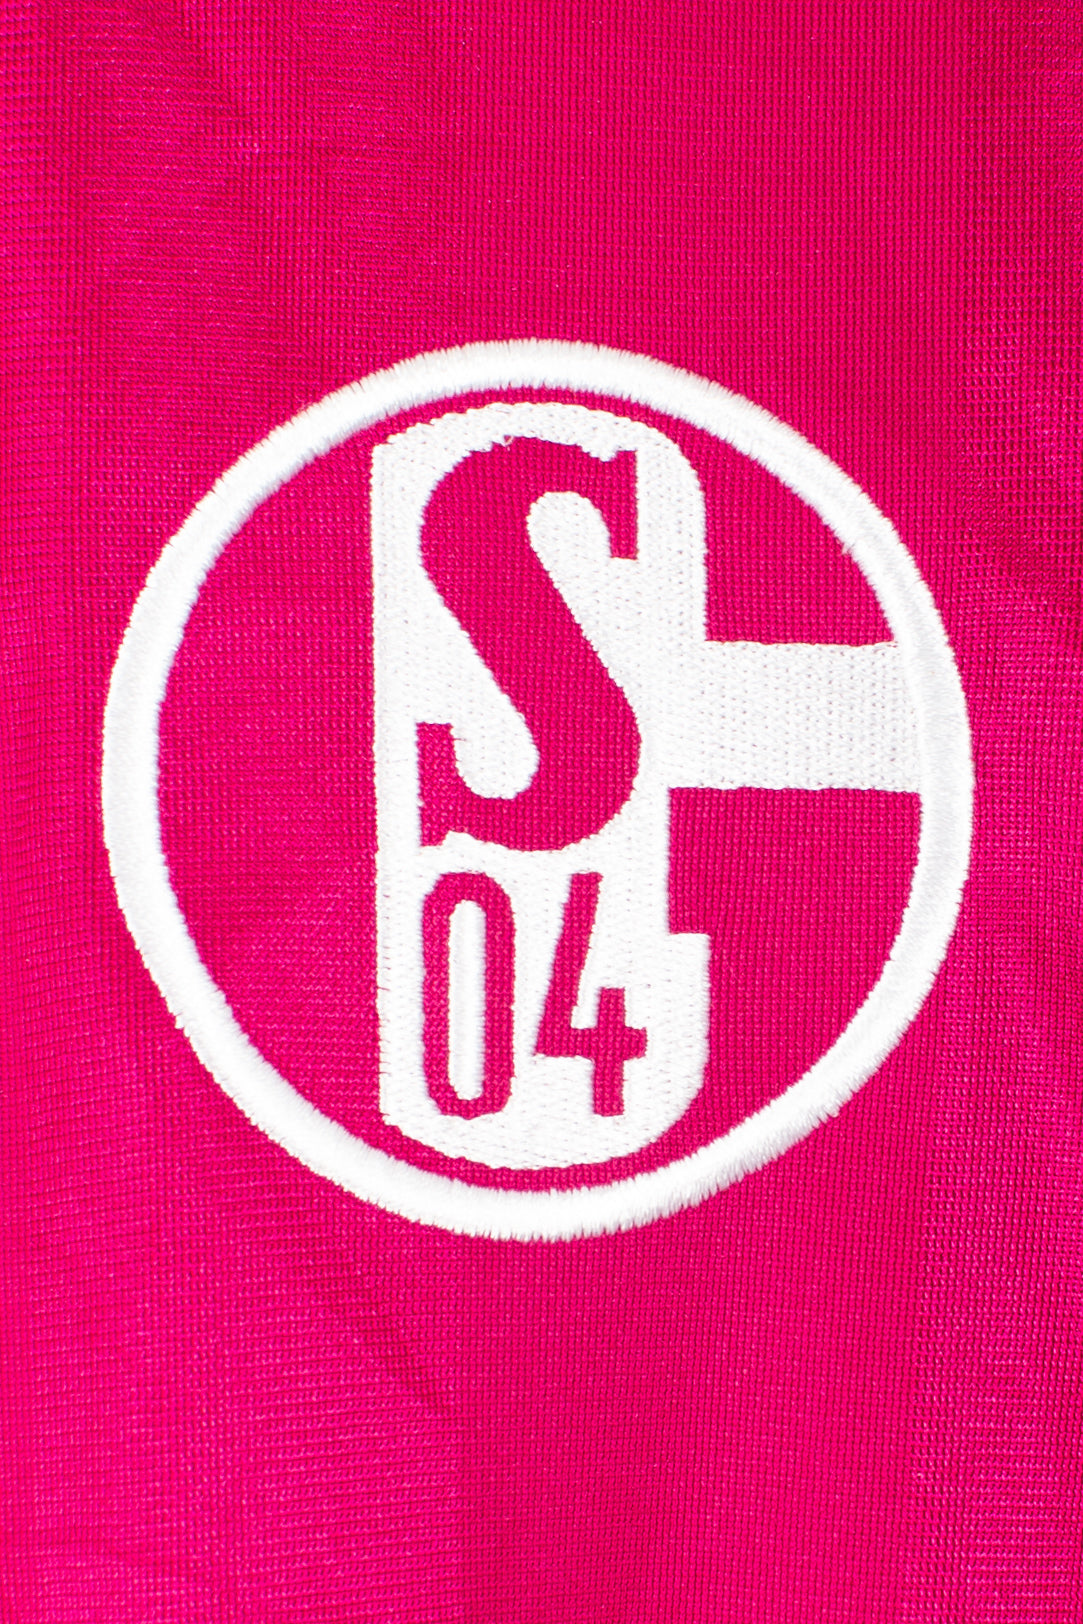 Schalke 04 2011/13 Third Shirt (Boateng) (XXL)